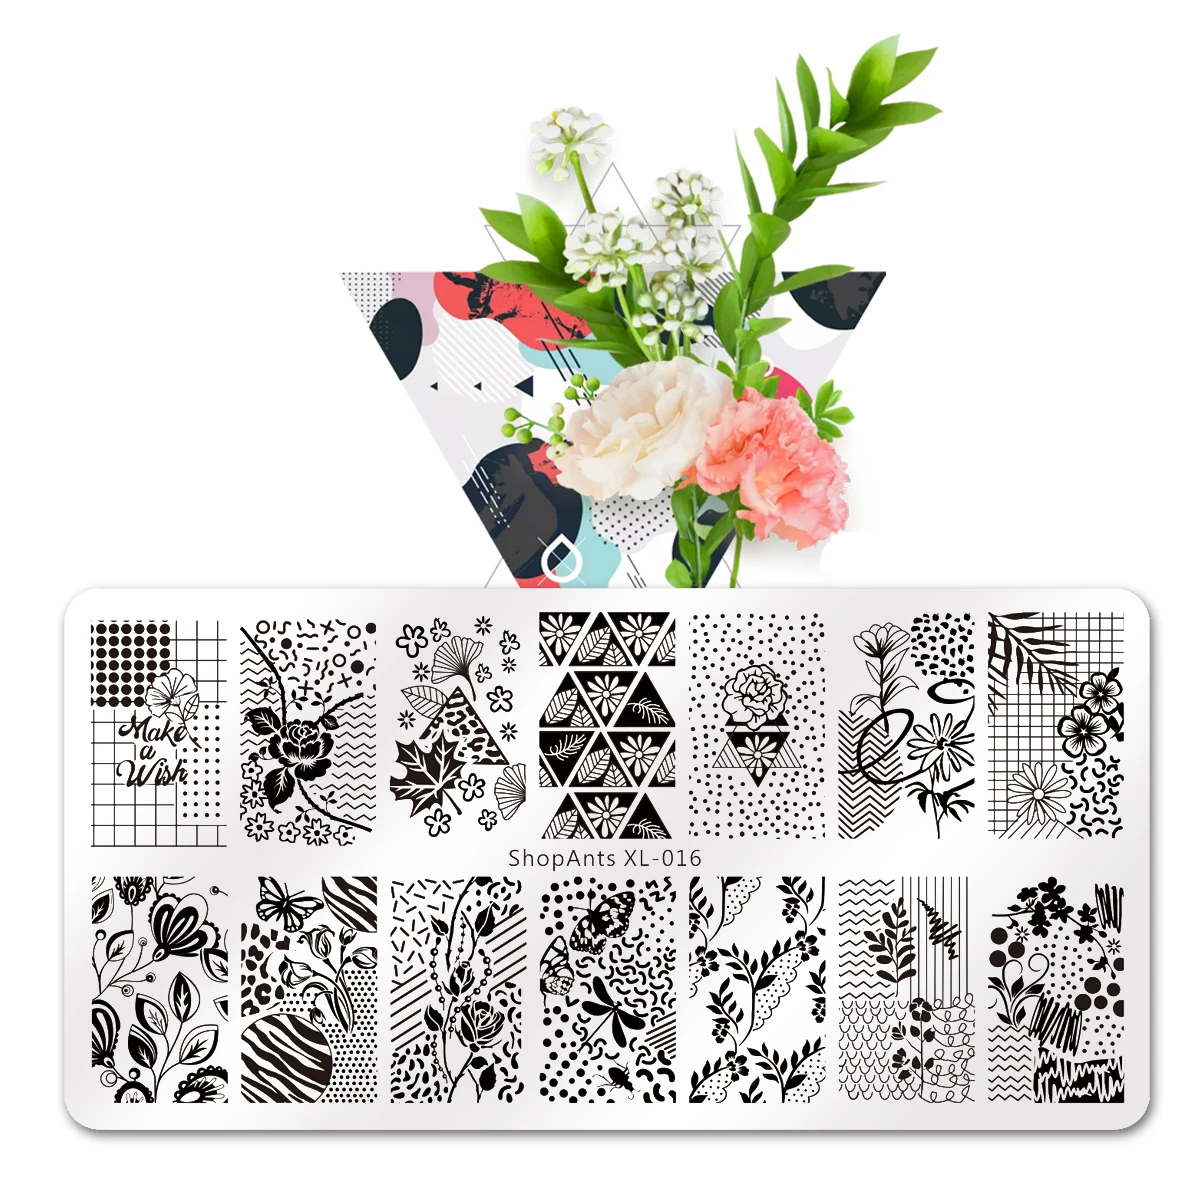 

6*12 см прямоугольные пластины для стемпинга ногтей от SHOPANTS, листья, цветы, бабочки, штампы для дизайна ногтей, шаблоны, трафареты, дизайн, лак, ...